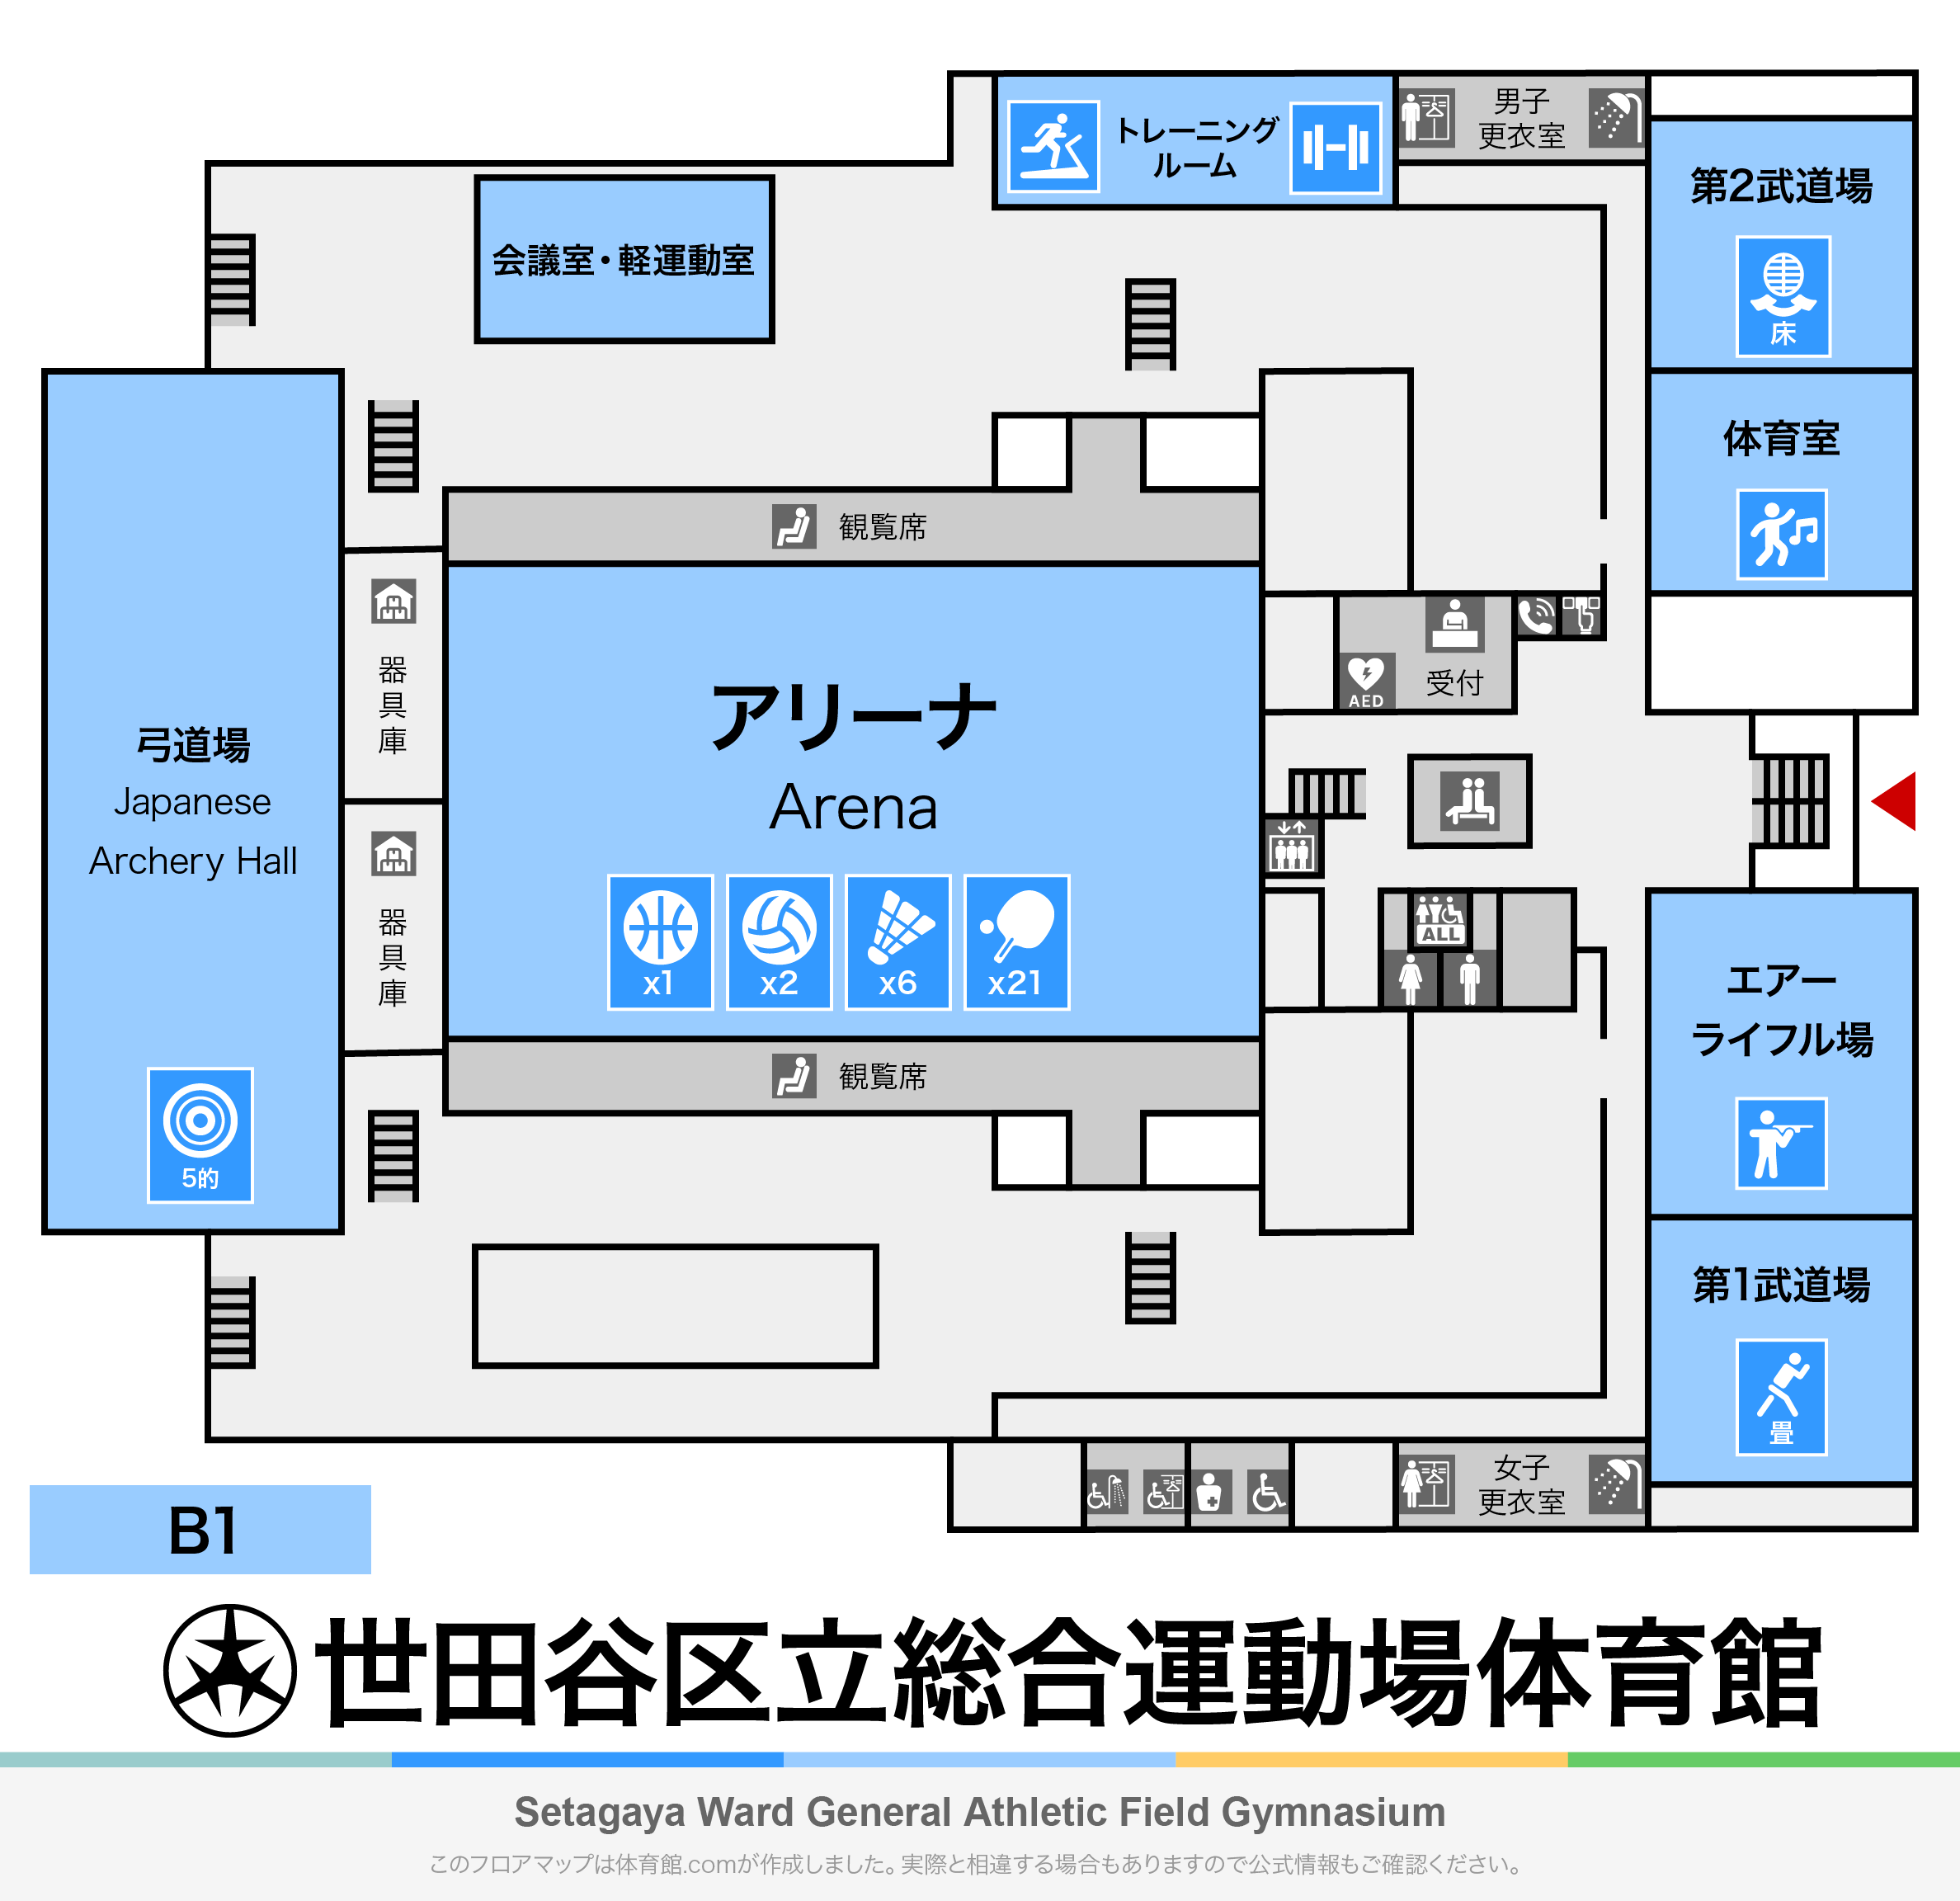 世田谷区立総合運動場体育館のフロアマップ